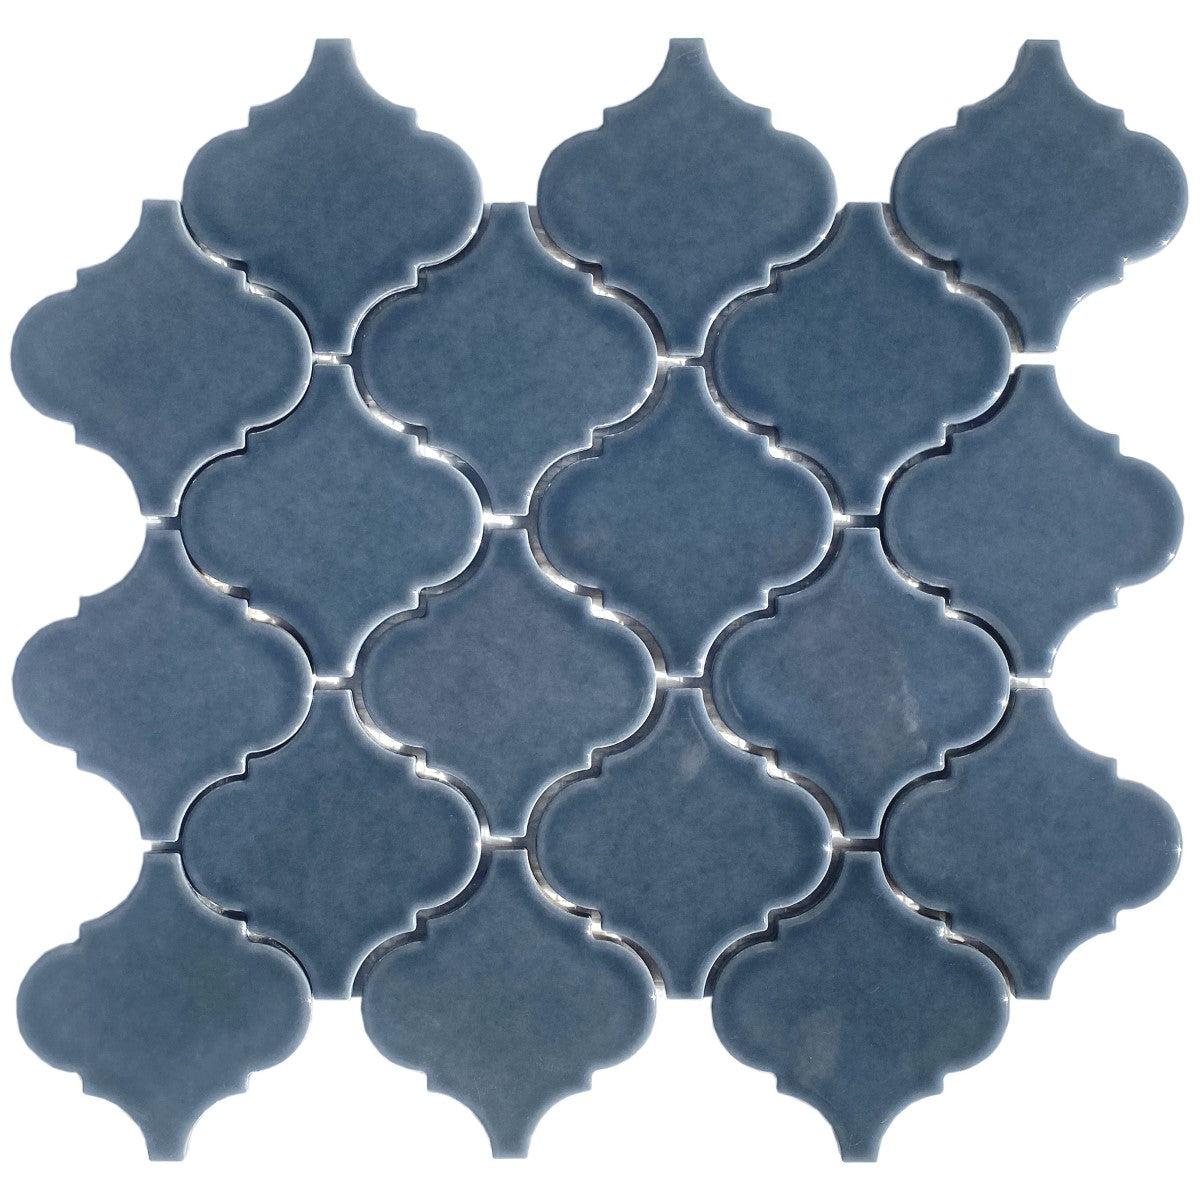 Dimension Blue Arabesque Porcelain Mosaic Tile